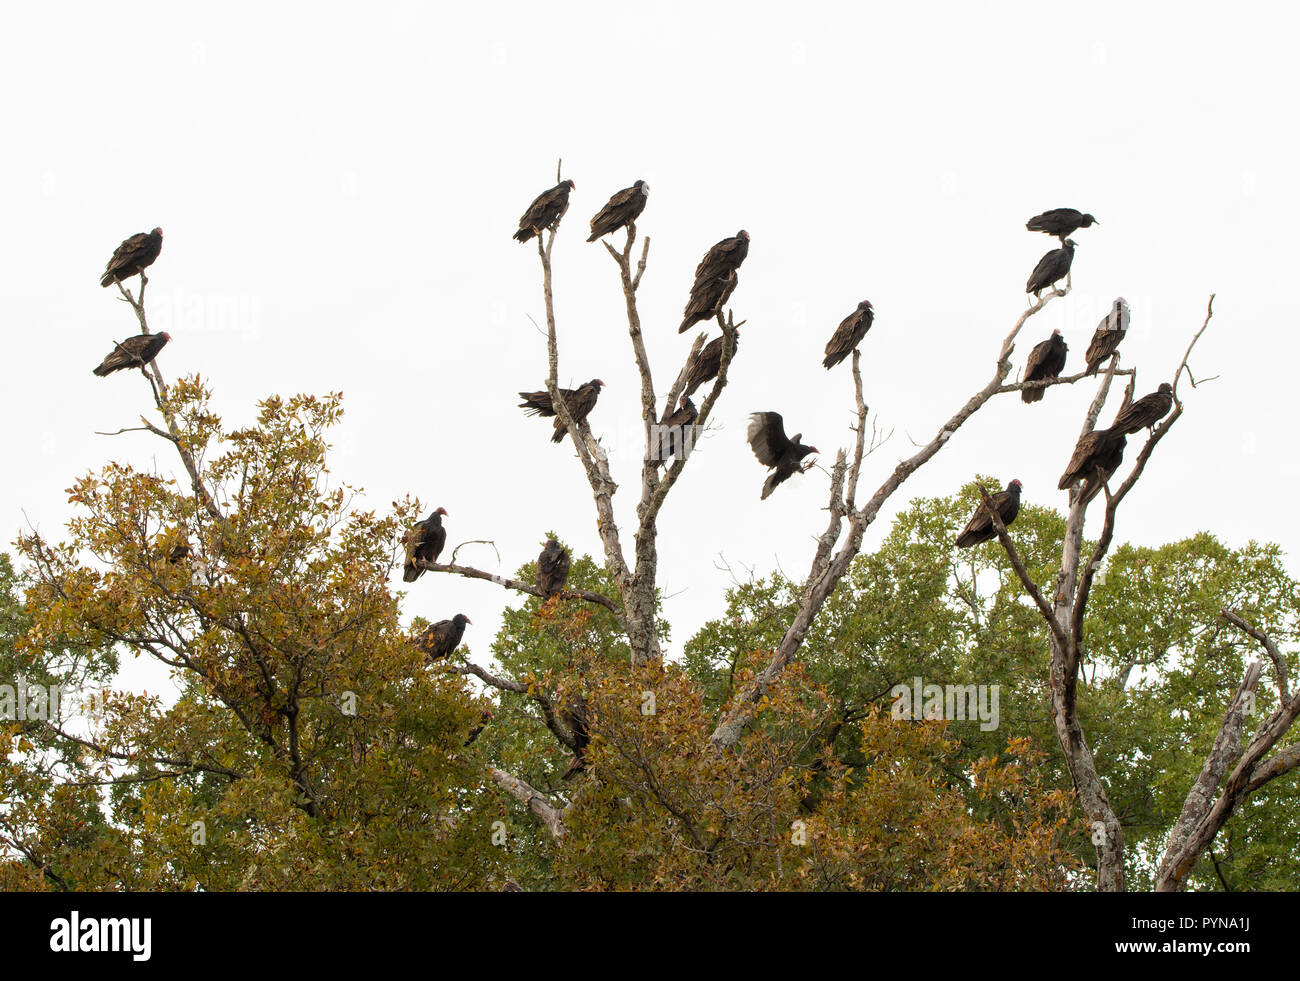 Un grand groupe de la communauté de l'Urubu, également appelé un comité, se percher sur un arbre mort sous un ciel couvert journée d'automne Banque D'Images